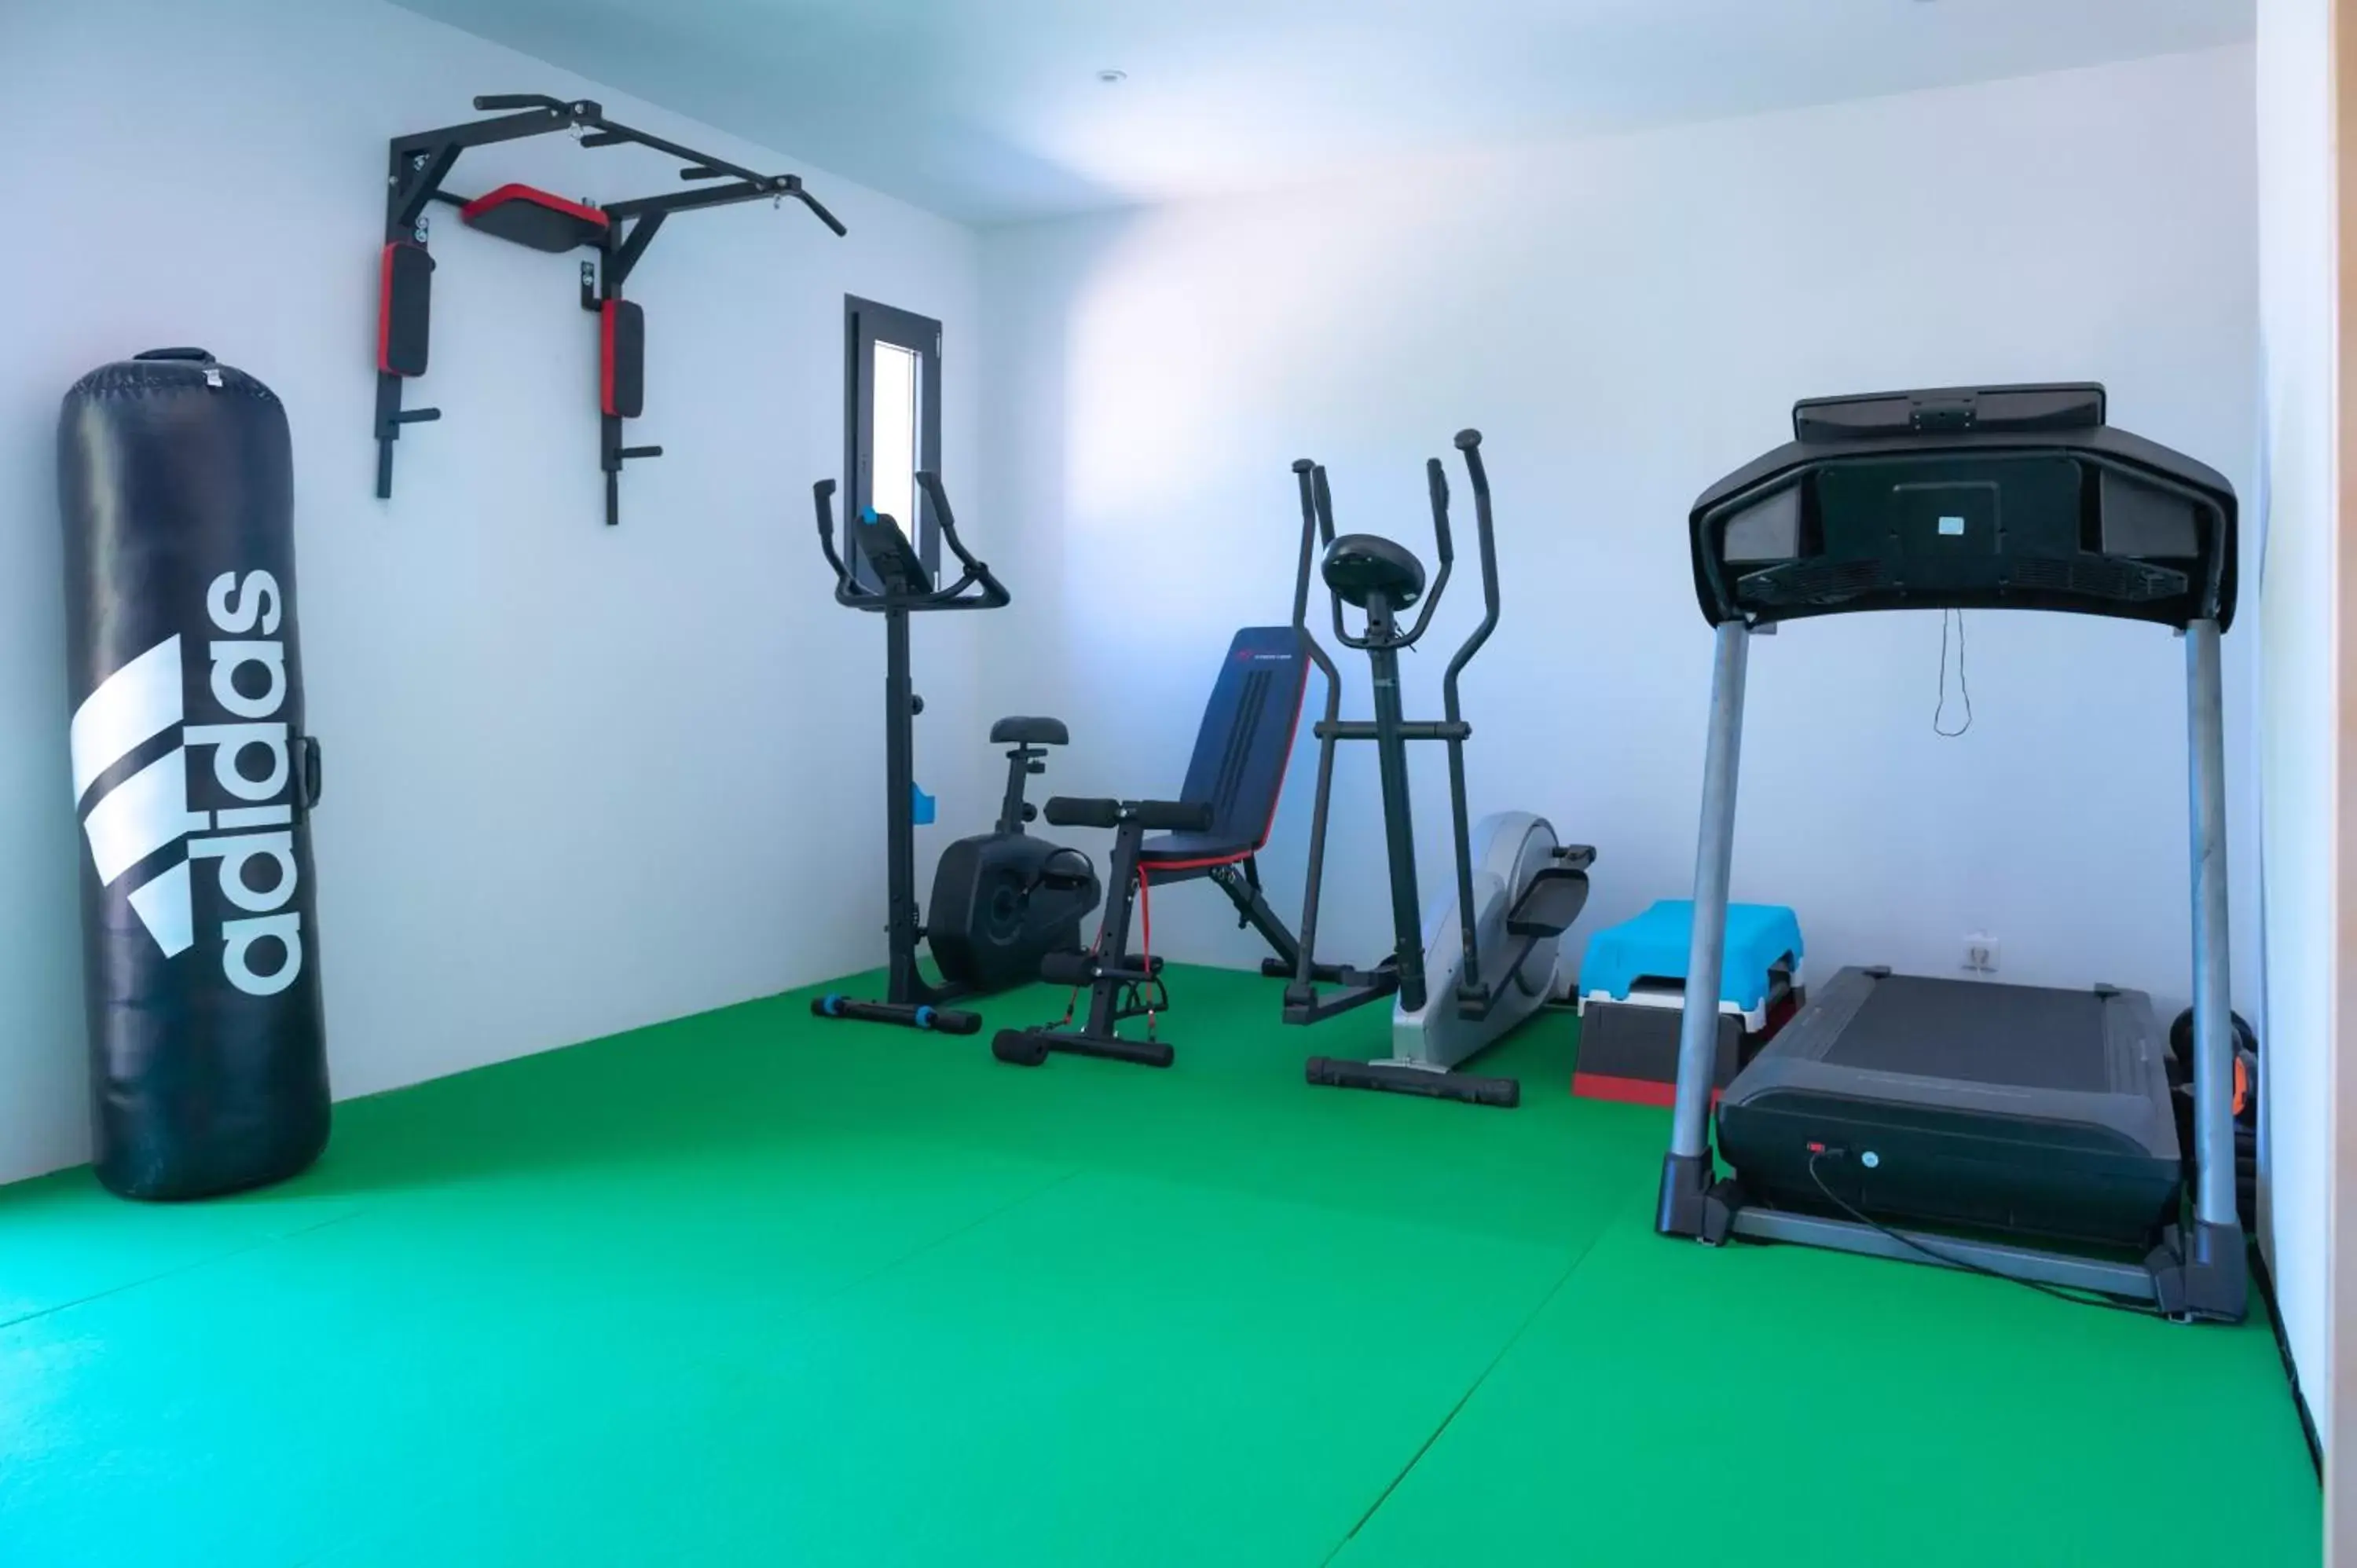 Fitness centre/facilities, Fitness Center/Facilities in A CASA DI JO